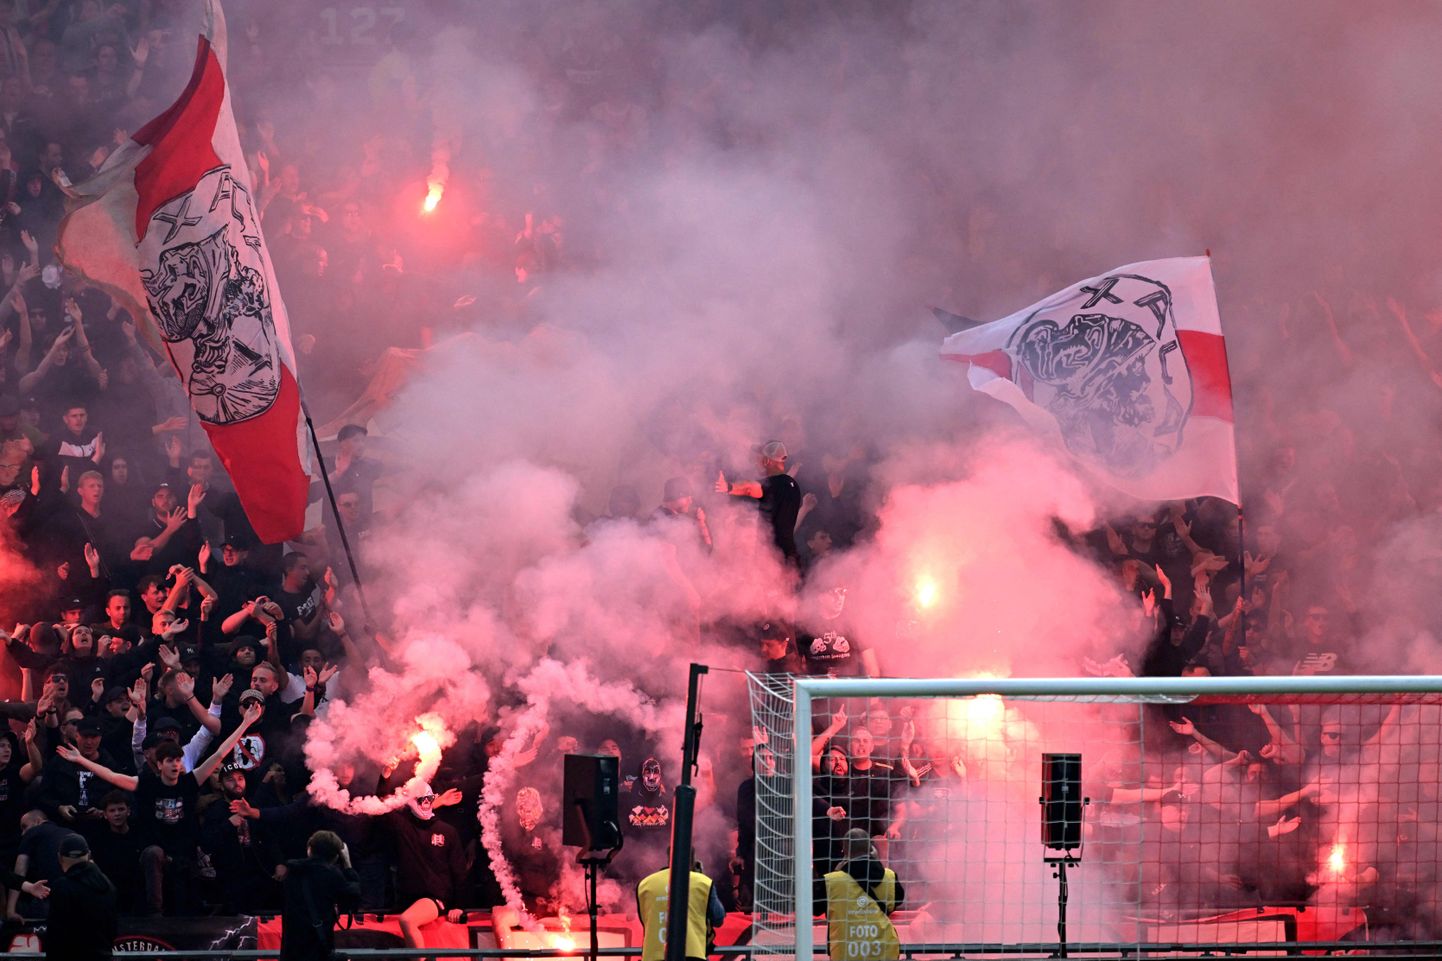 Amsterdami Ajaxi fännid ei ole rahul klubis toimuvaga ja seda on nüüdseks juba jõuliselt väljendatud.